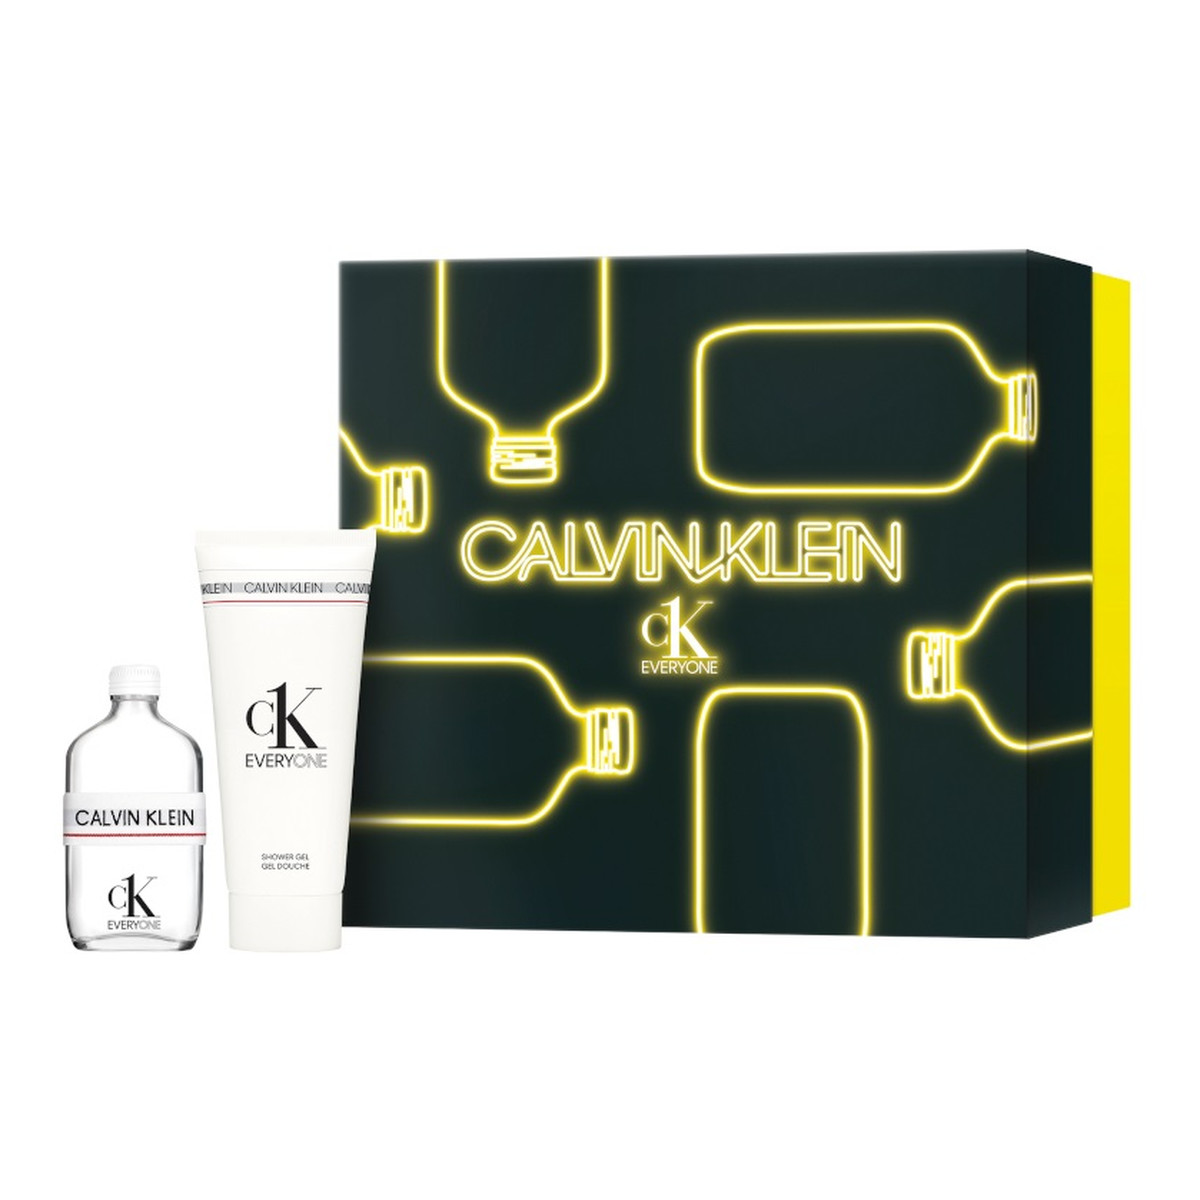 Calvin Klein CK Everyone Zestaw woda toaletowa spray 50ml + żel pod prysznic 100ml